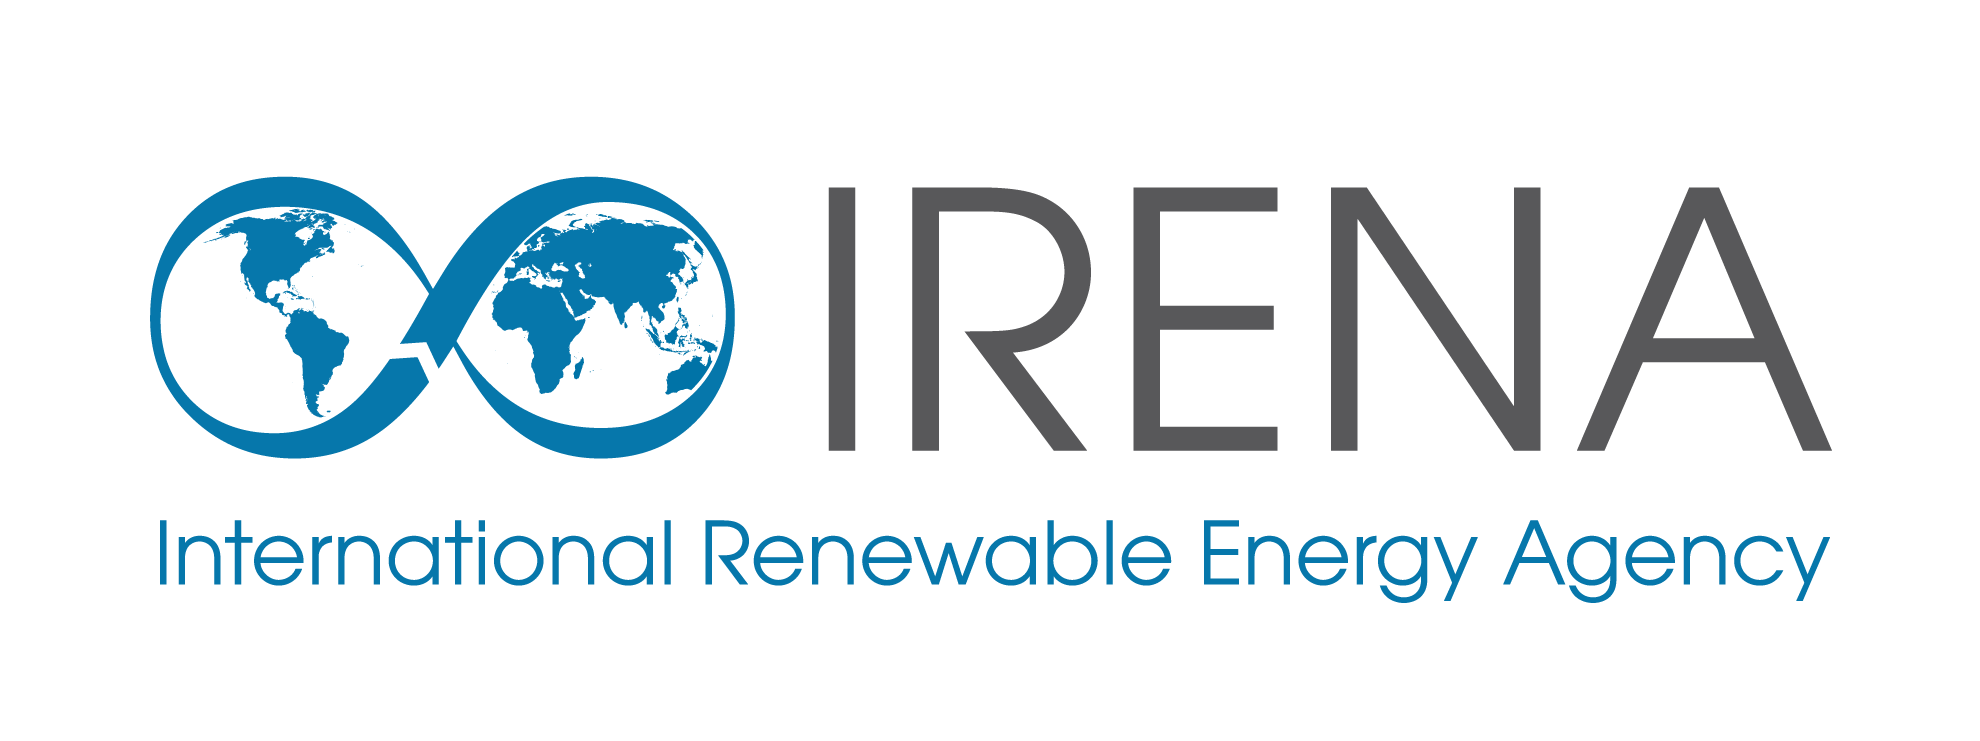 International Renewable Energy Agency (IRENA) Logo